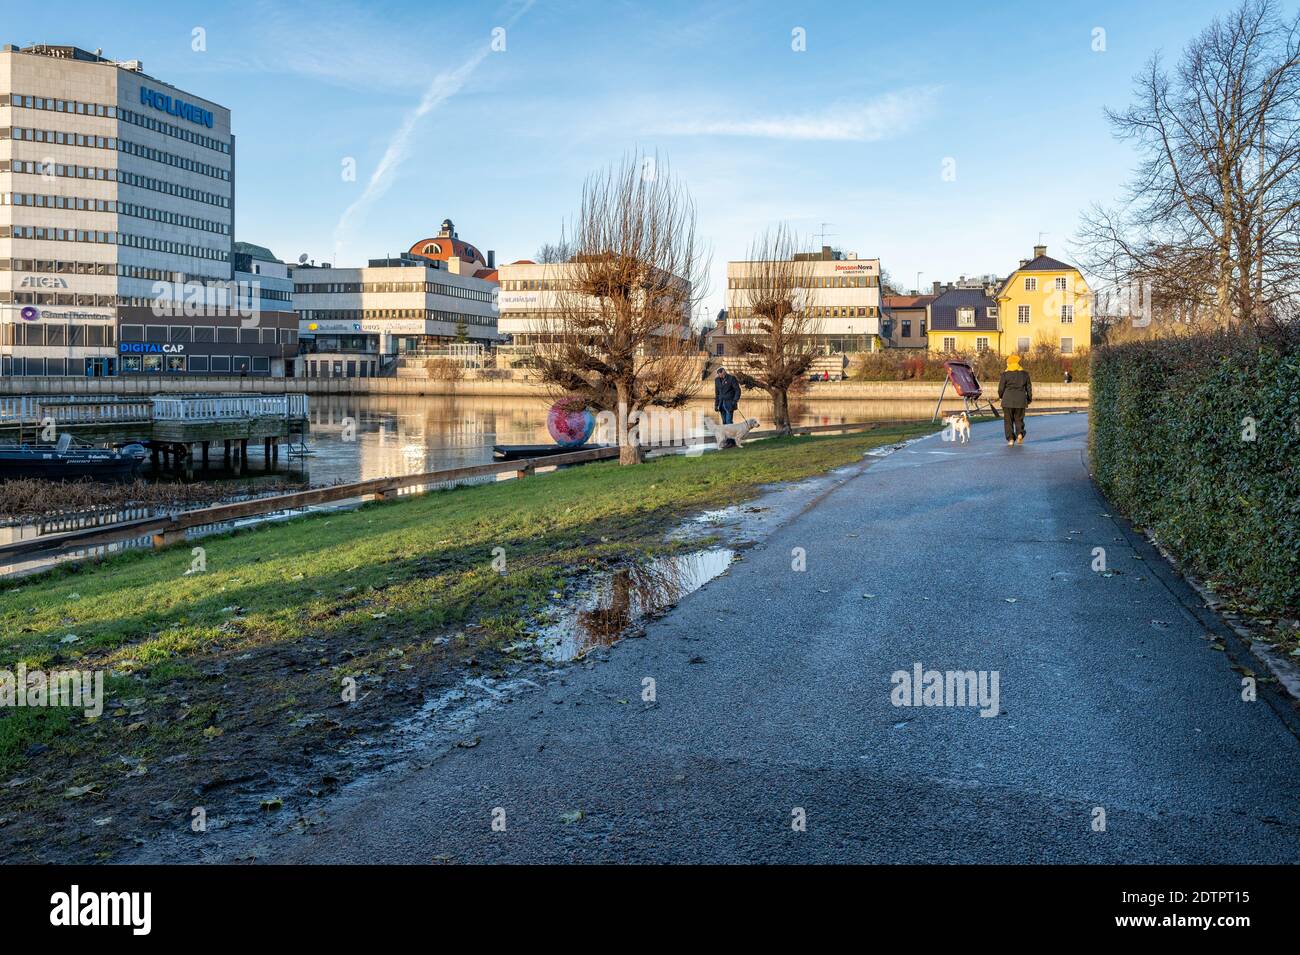 Lumière de décembre le long de la rivière Motala à Norrkoping. Norrkoping est une ville industrielle historique de Suède. Banque D'Images